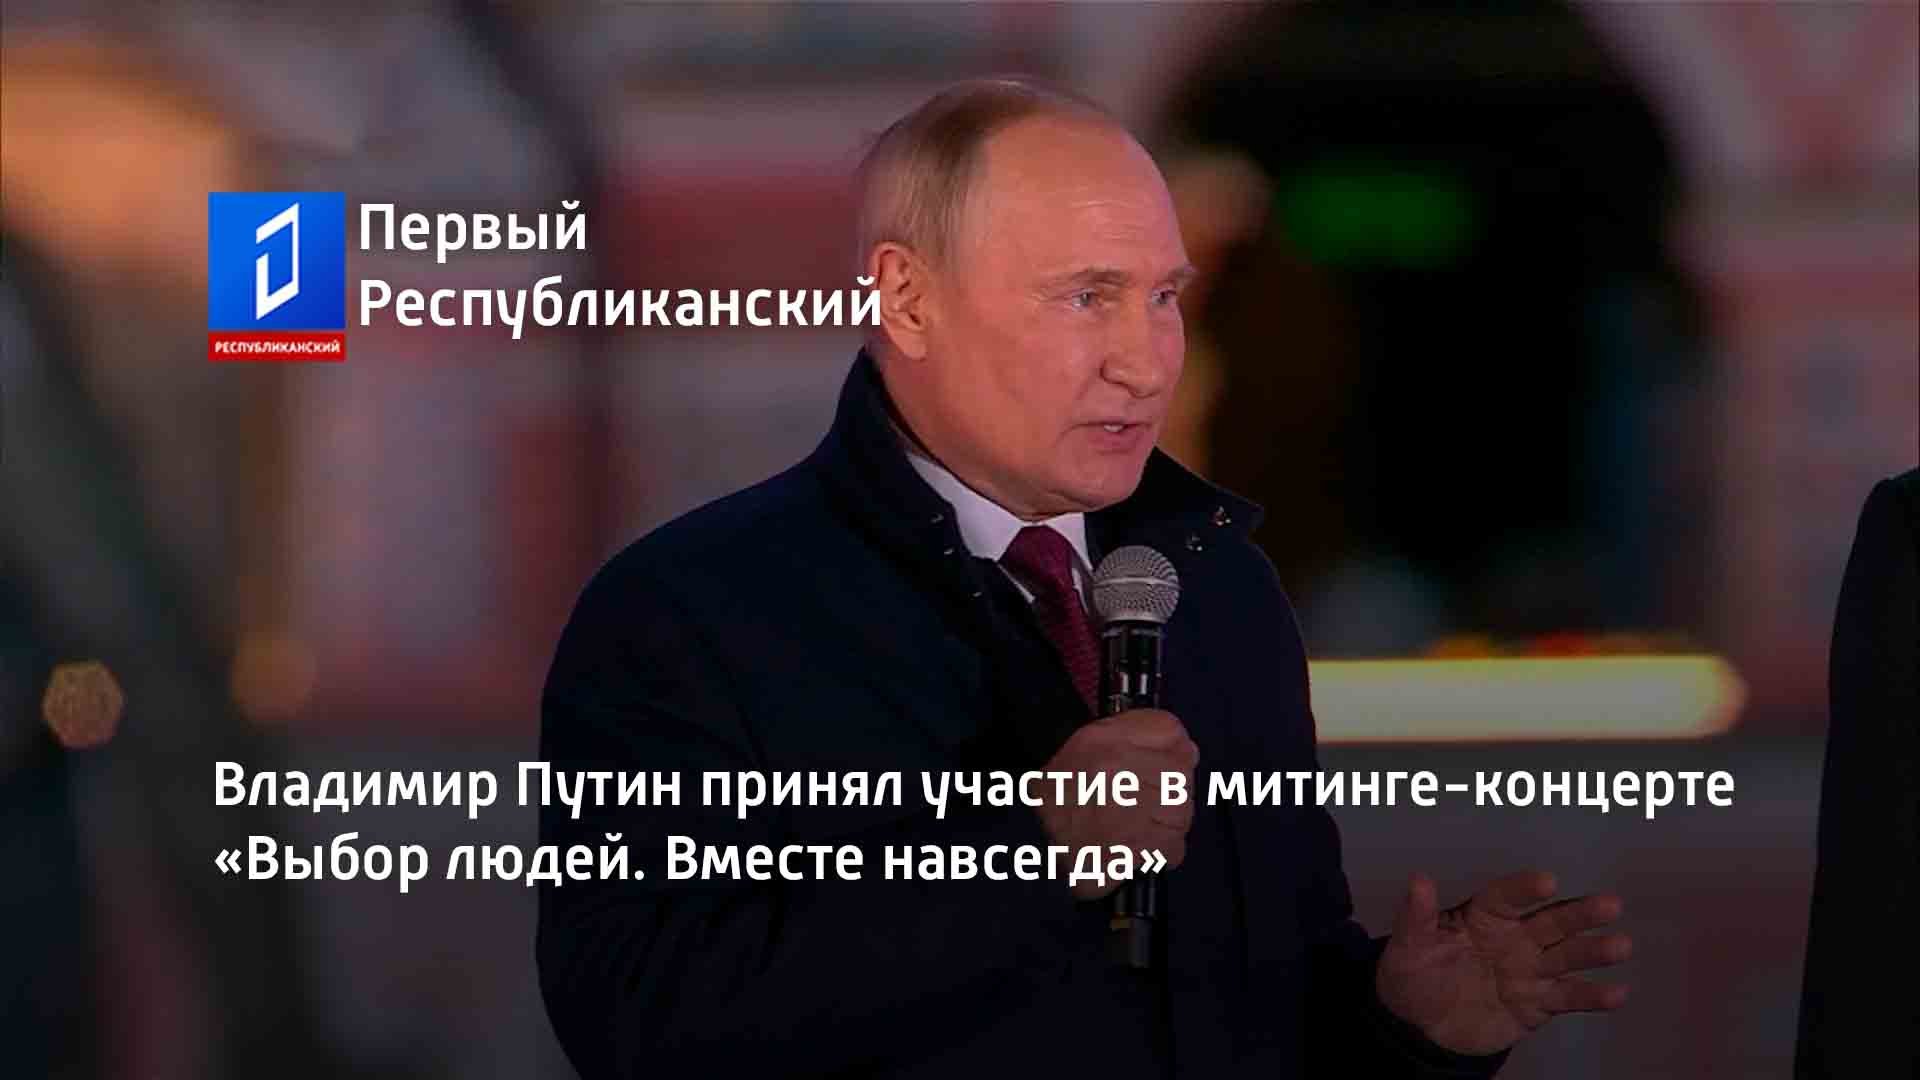 Владимир Путин принял участие в митинге-концерте «Выбор людей. Вместе навсегда»